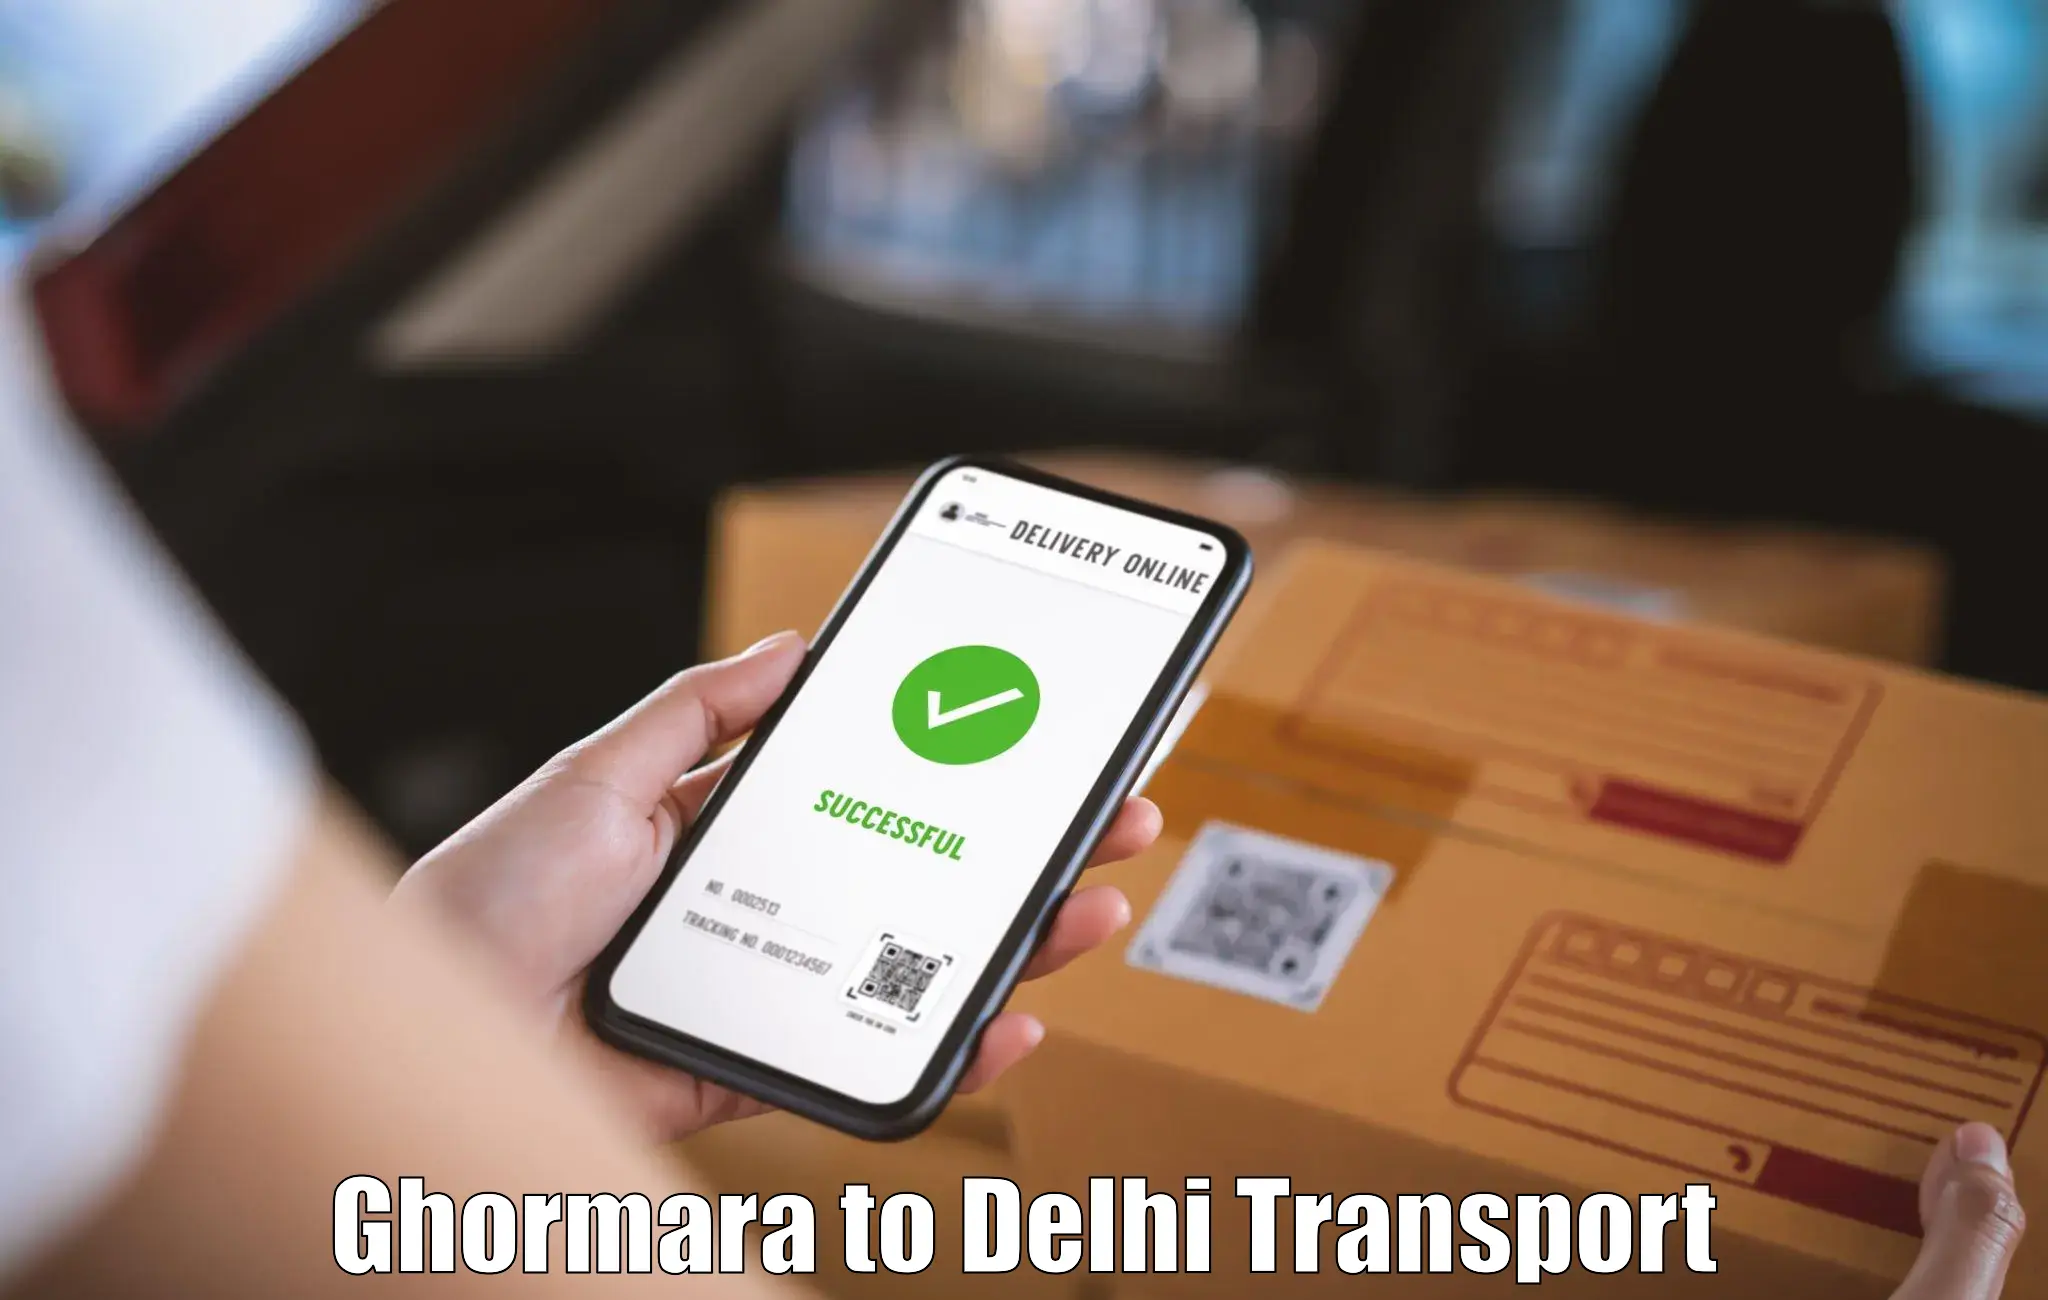 Logistics transportation services Ghormara to Delhi